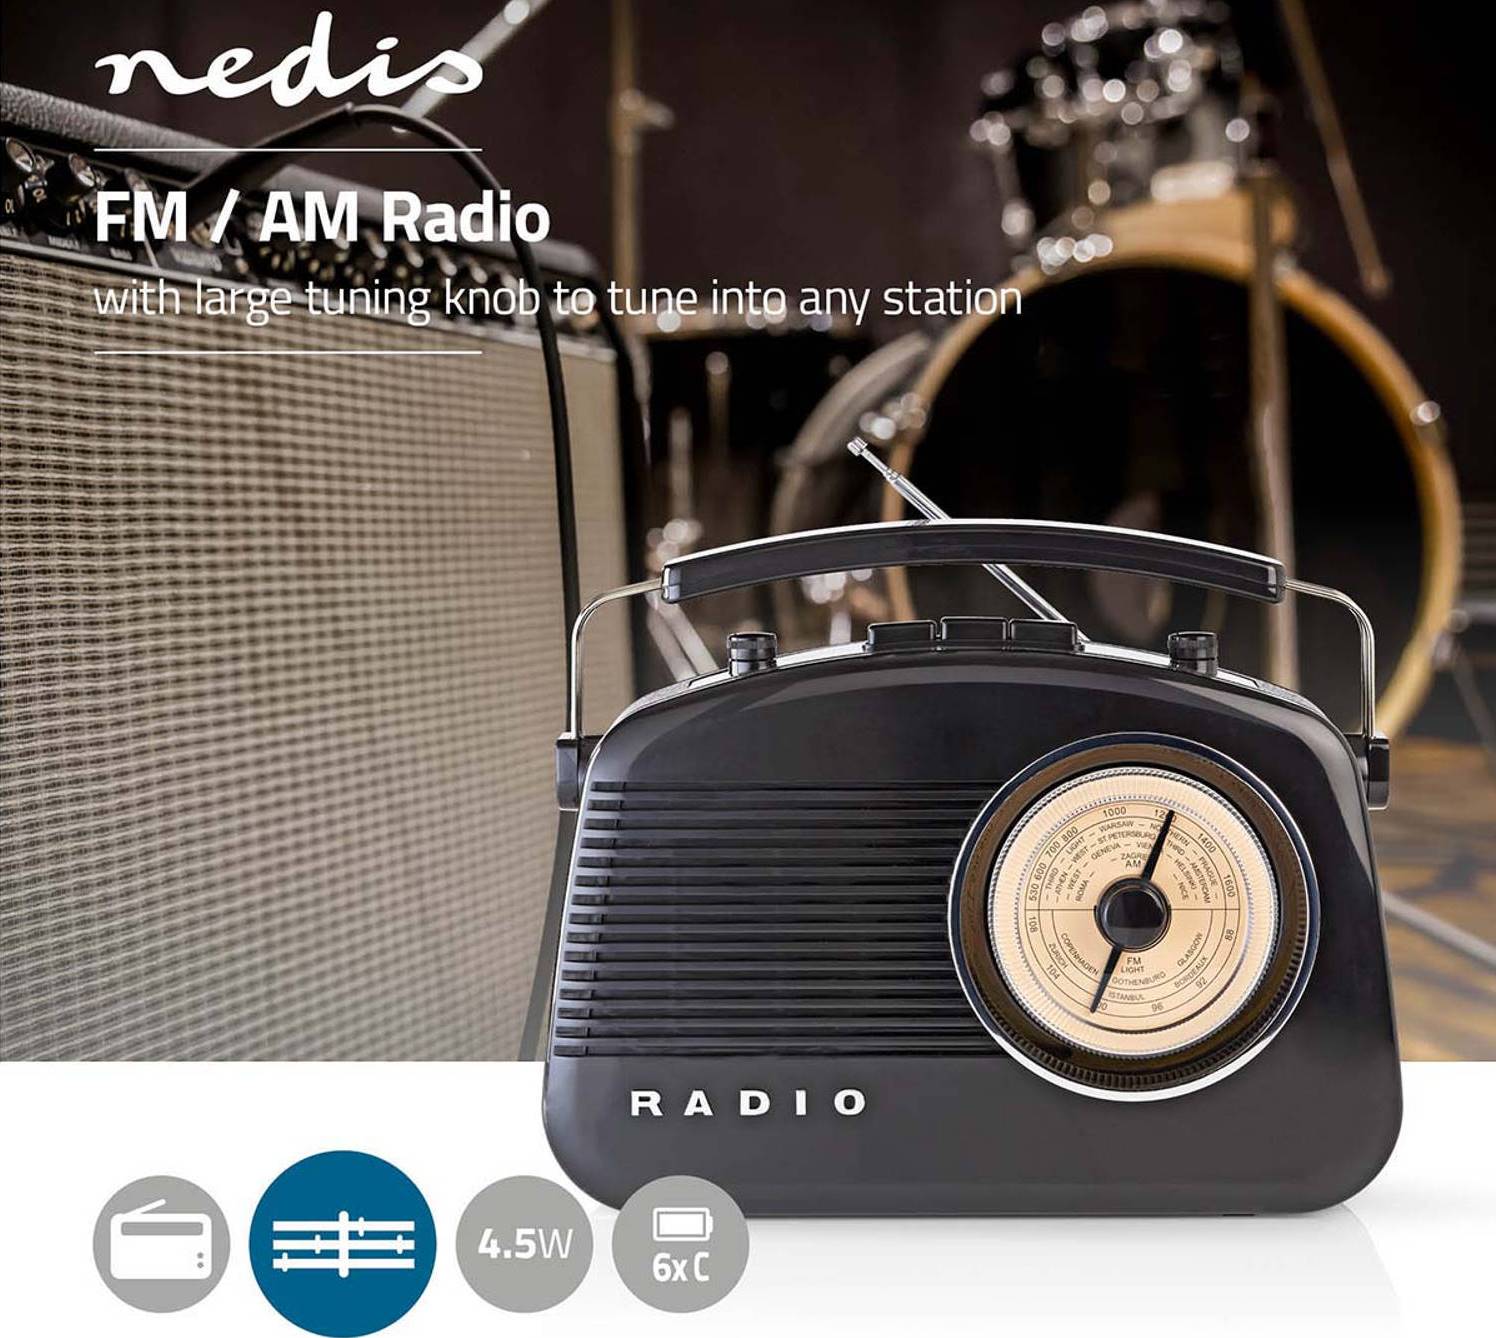 Retro FM / AM radiopřijímač Nedis RDFM5000BK je velkou stupnicí pro snadné naladění, kdy pracuje s frekvencemi 88 až 108,5 MHz a 522 až 1620 kHz.